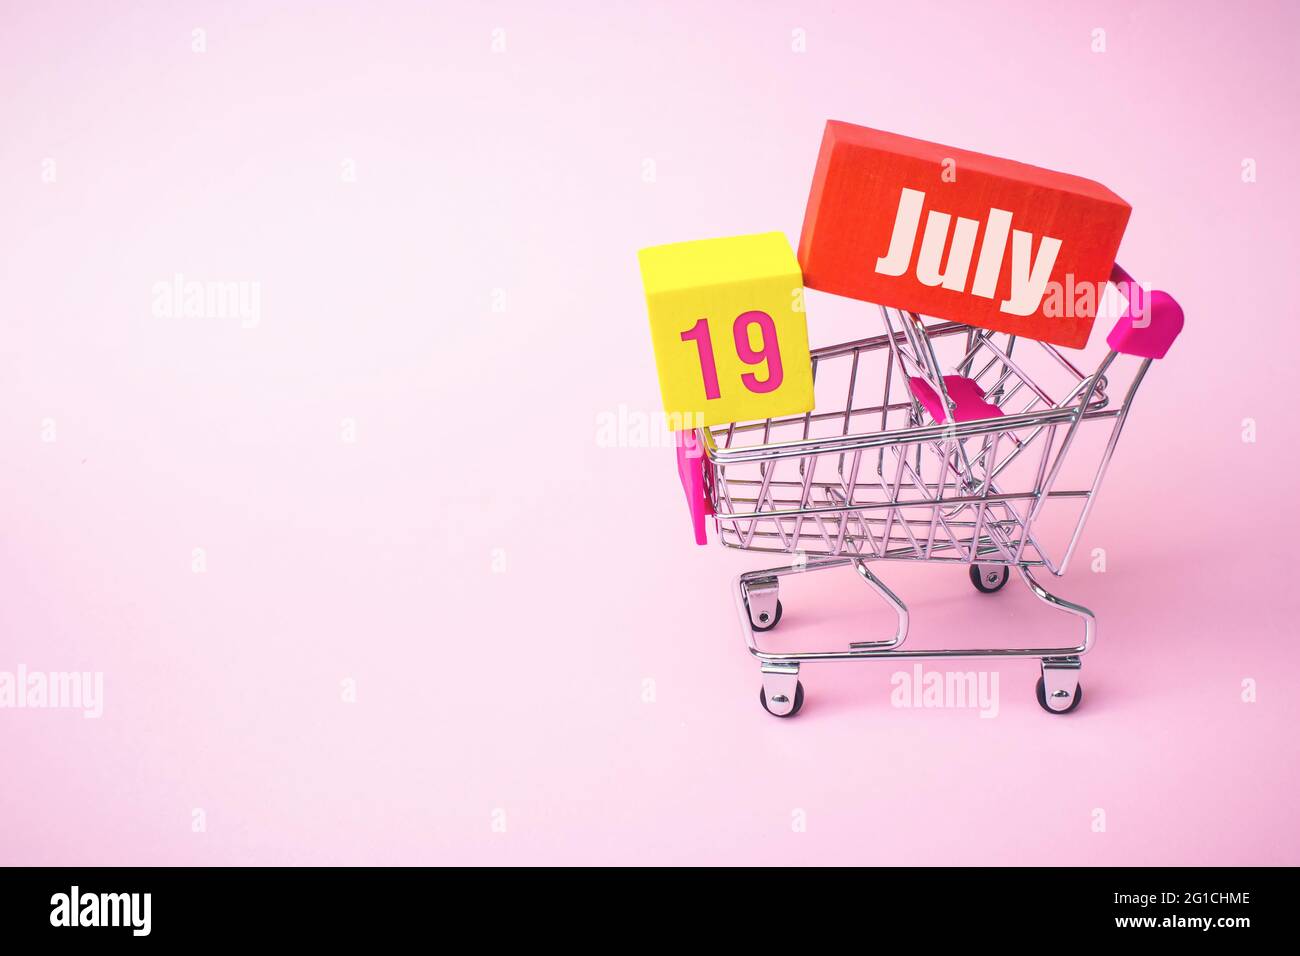 19 luglio. Giorno 19 del mese, data del calendario. Primo piano carrello giocattolo in metallo con scatola rossa e gialla all'interno con data calendario su sfondo rosa. SUMM Foto Stock